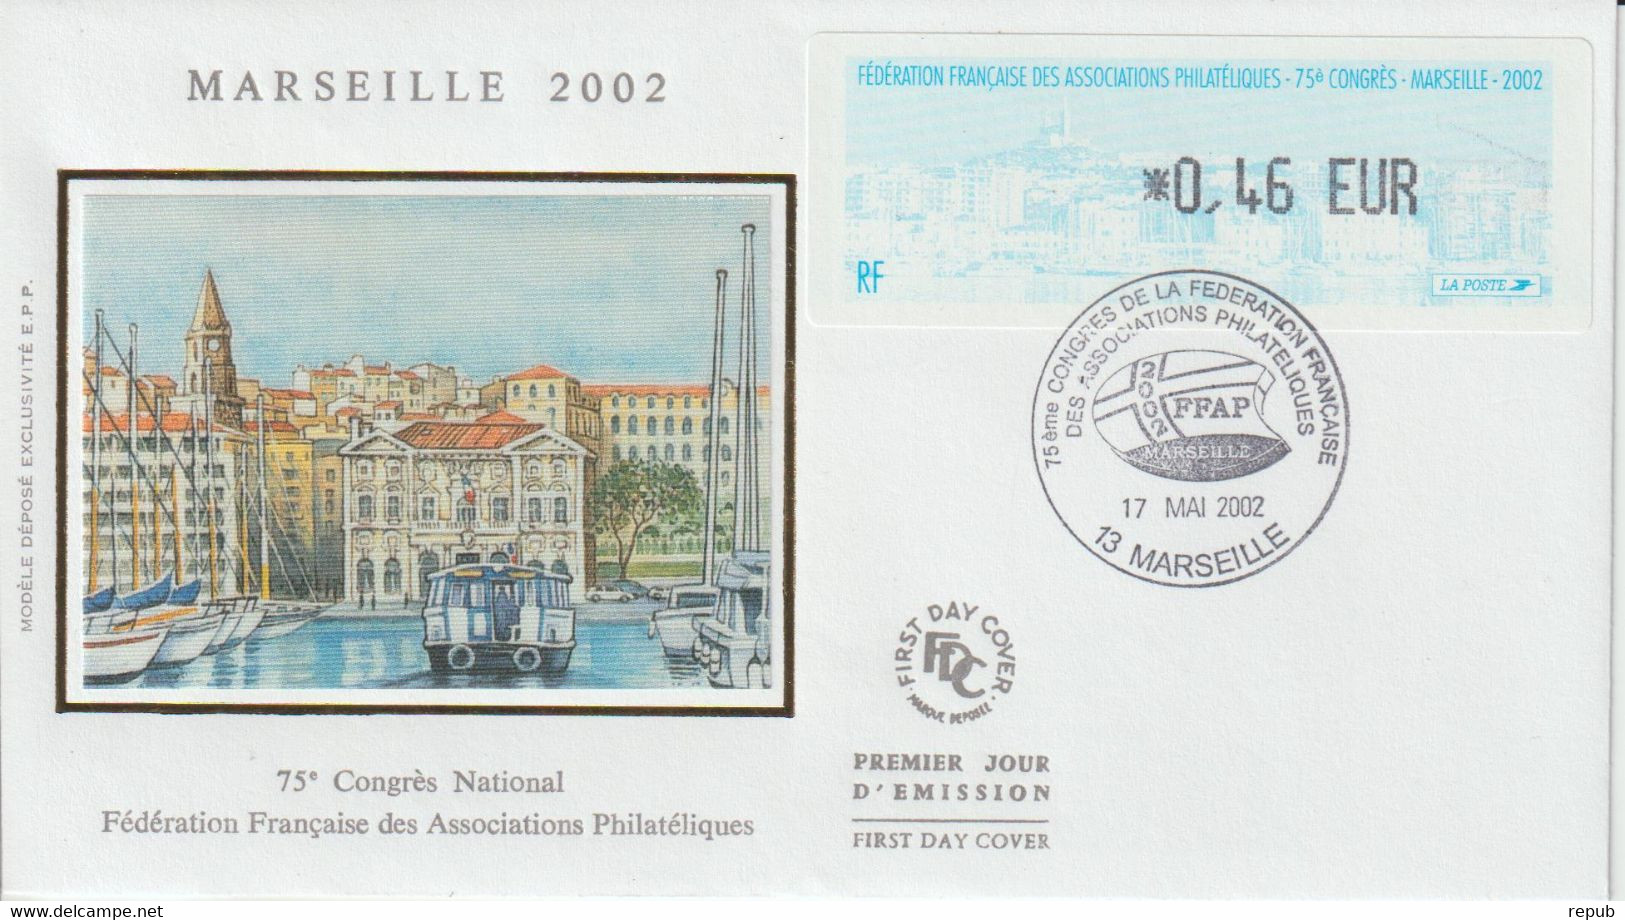 Vignette Illustrée Marseille 2002 Enveloppe FDC - 1999-2009 Illustrated Franking Labels